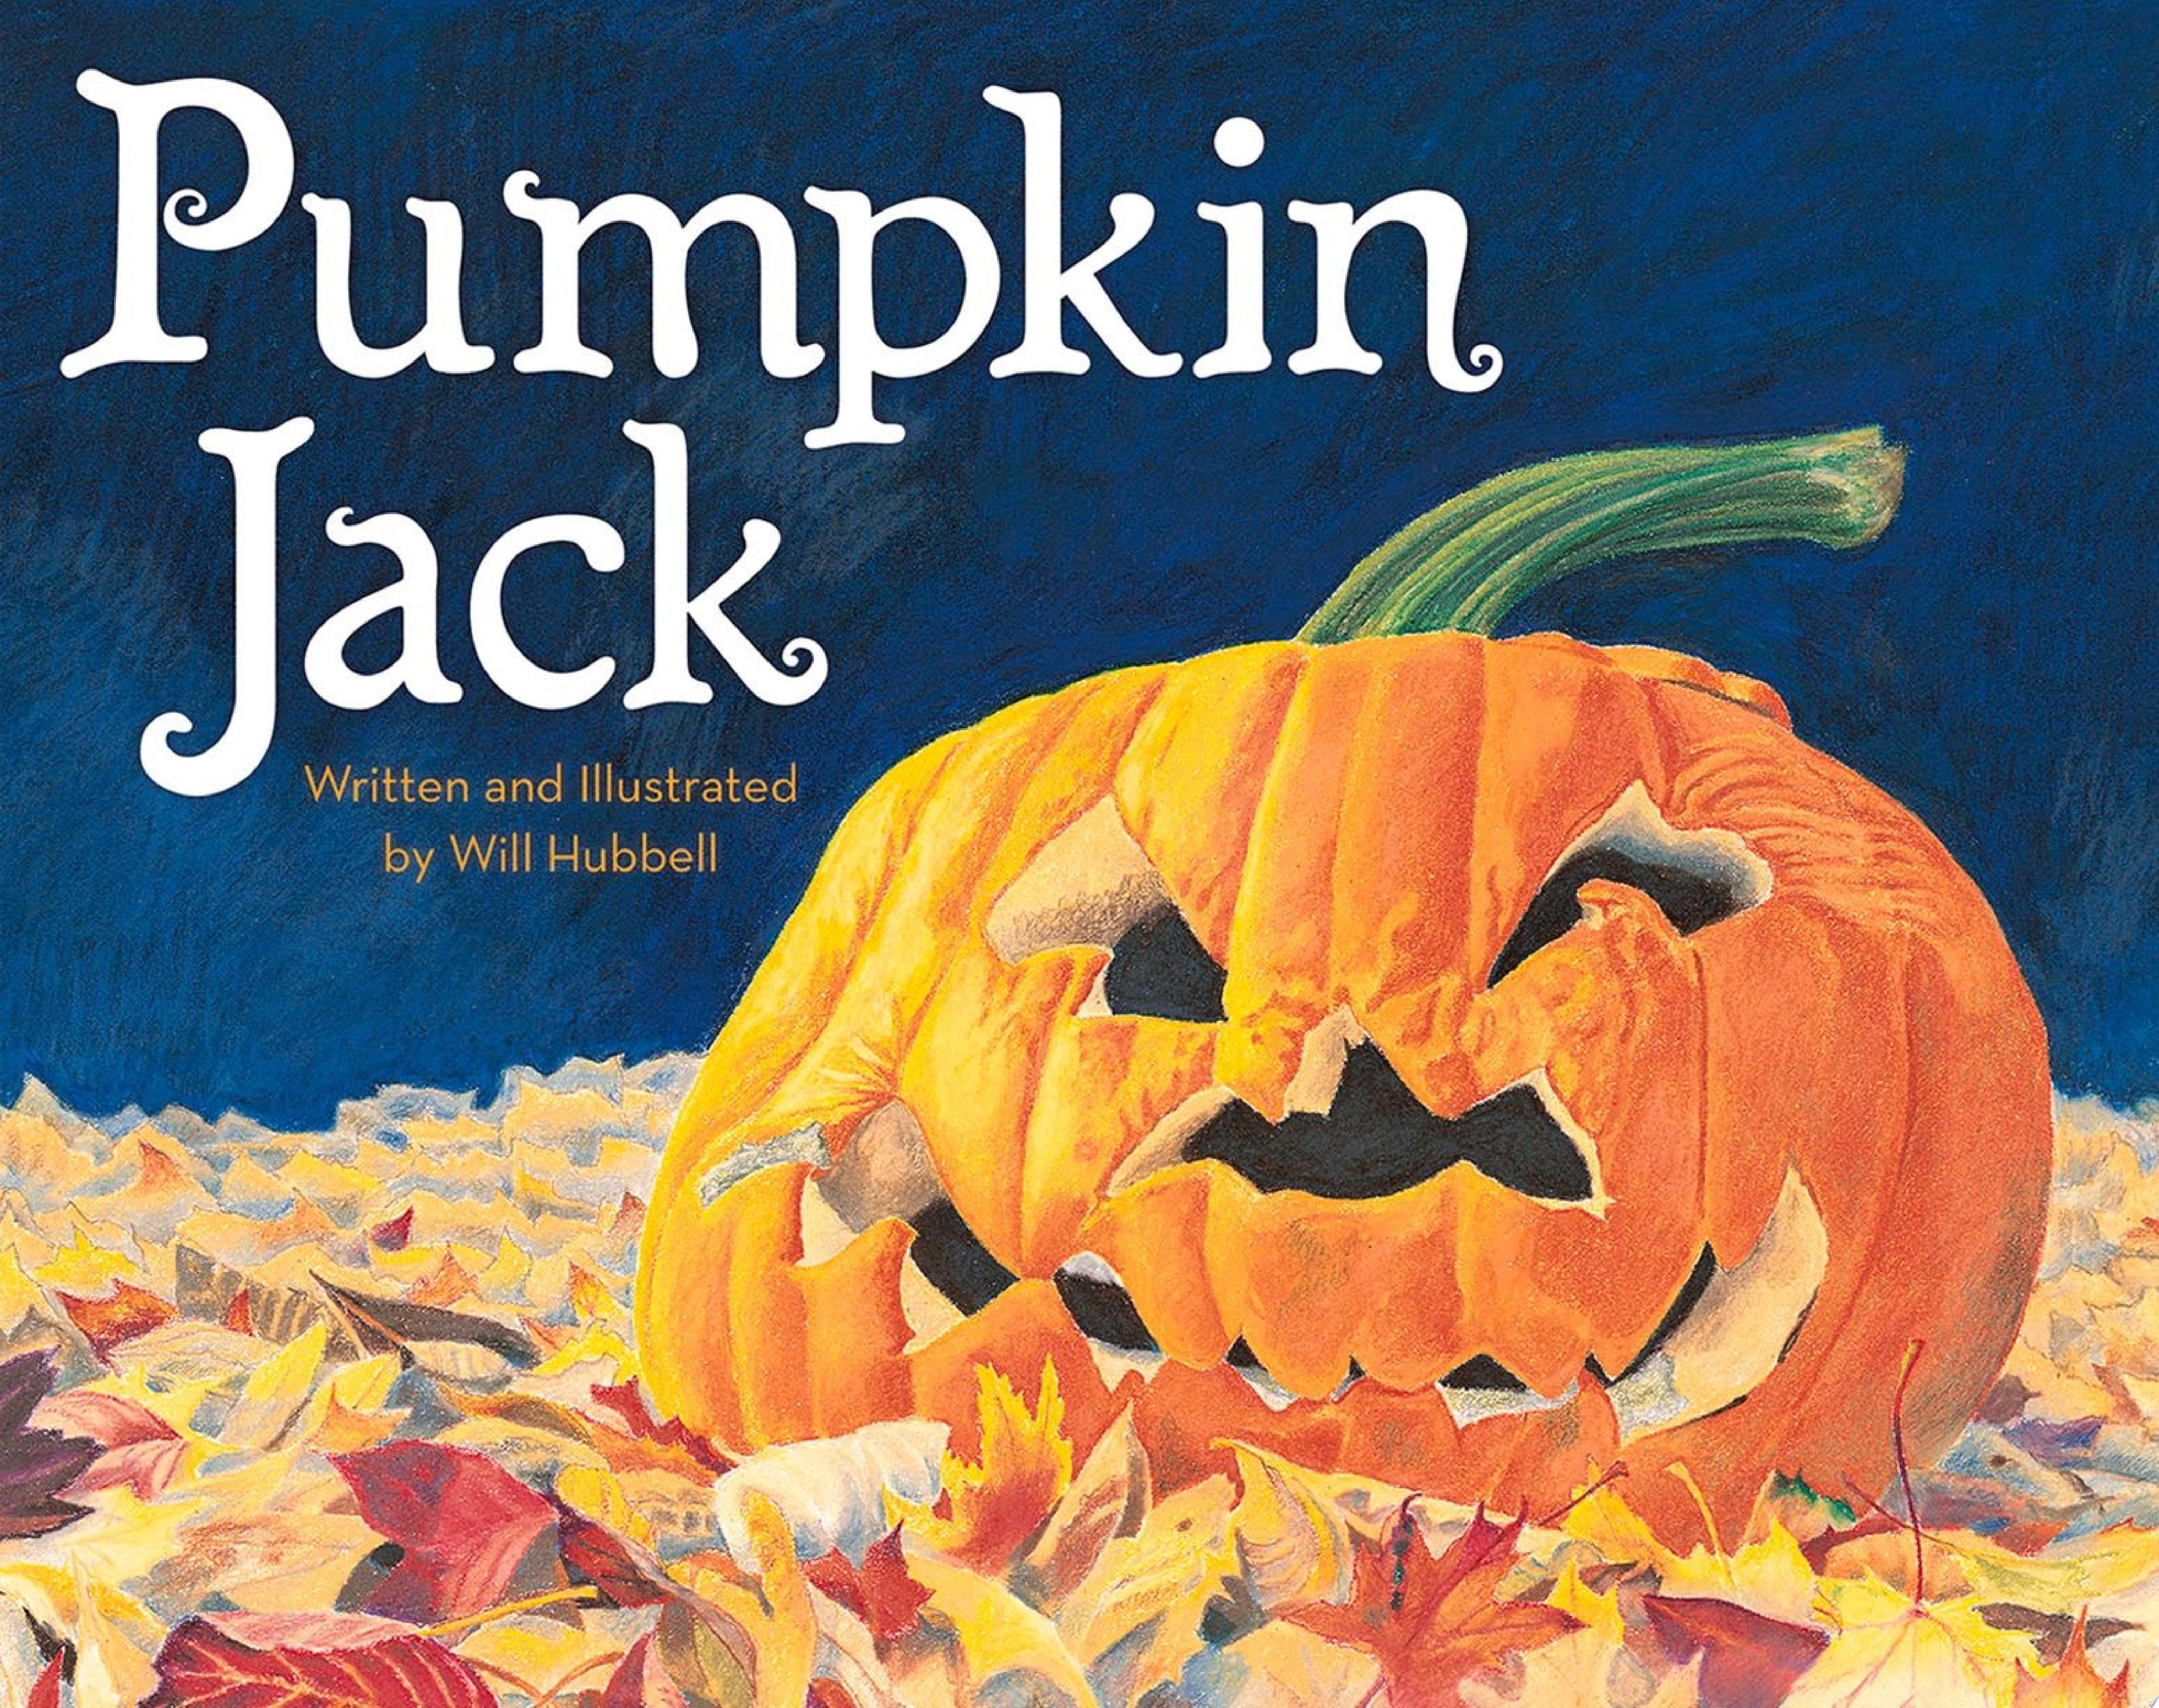 Image for "Pumpkin Jack"